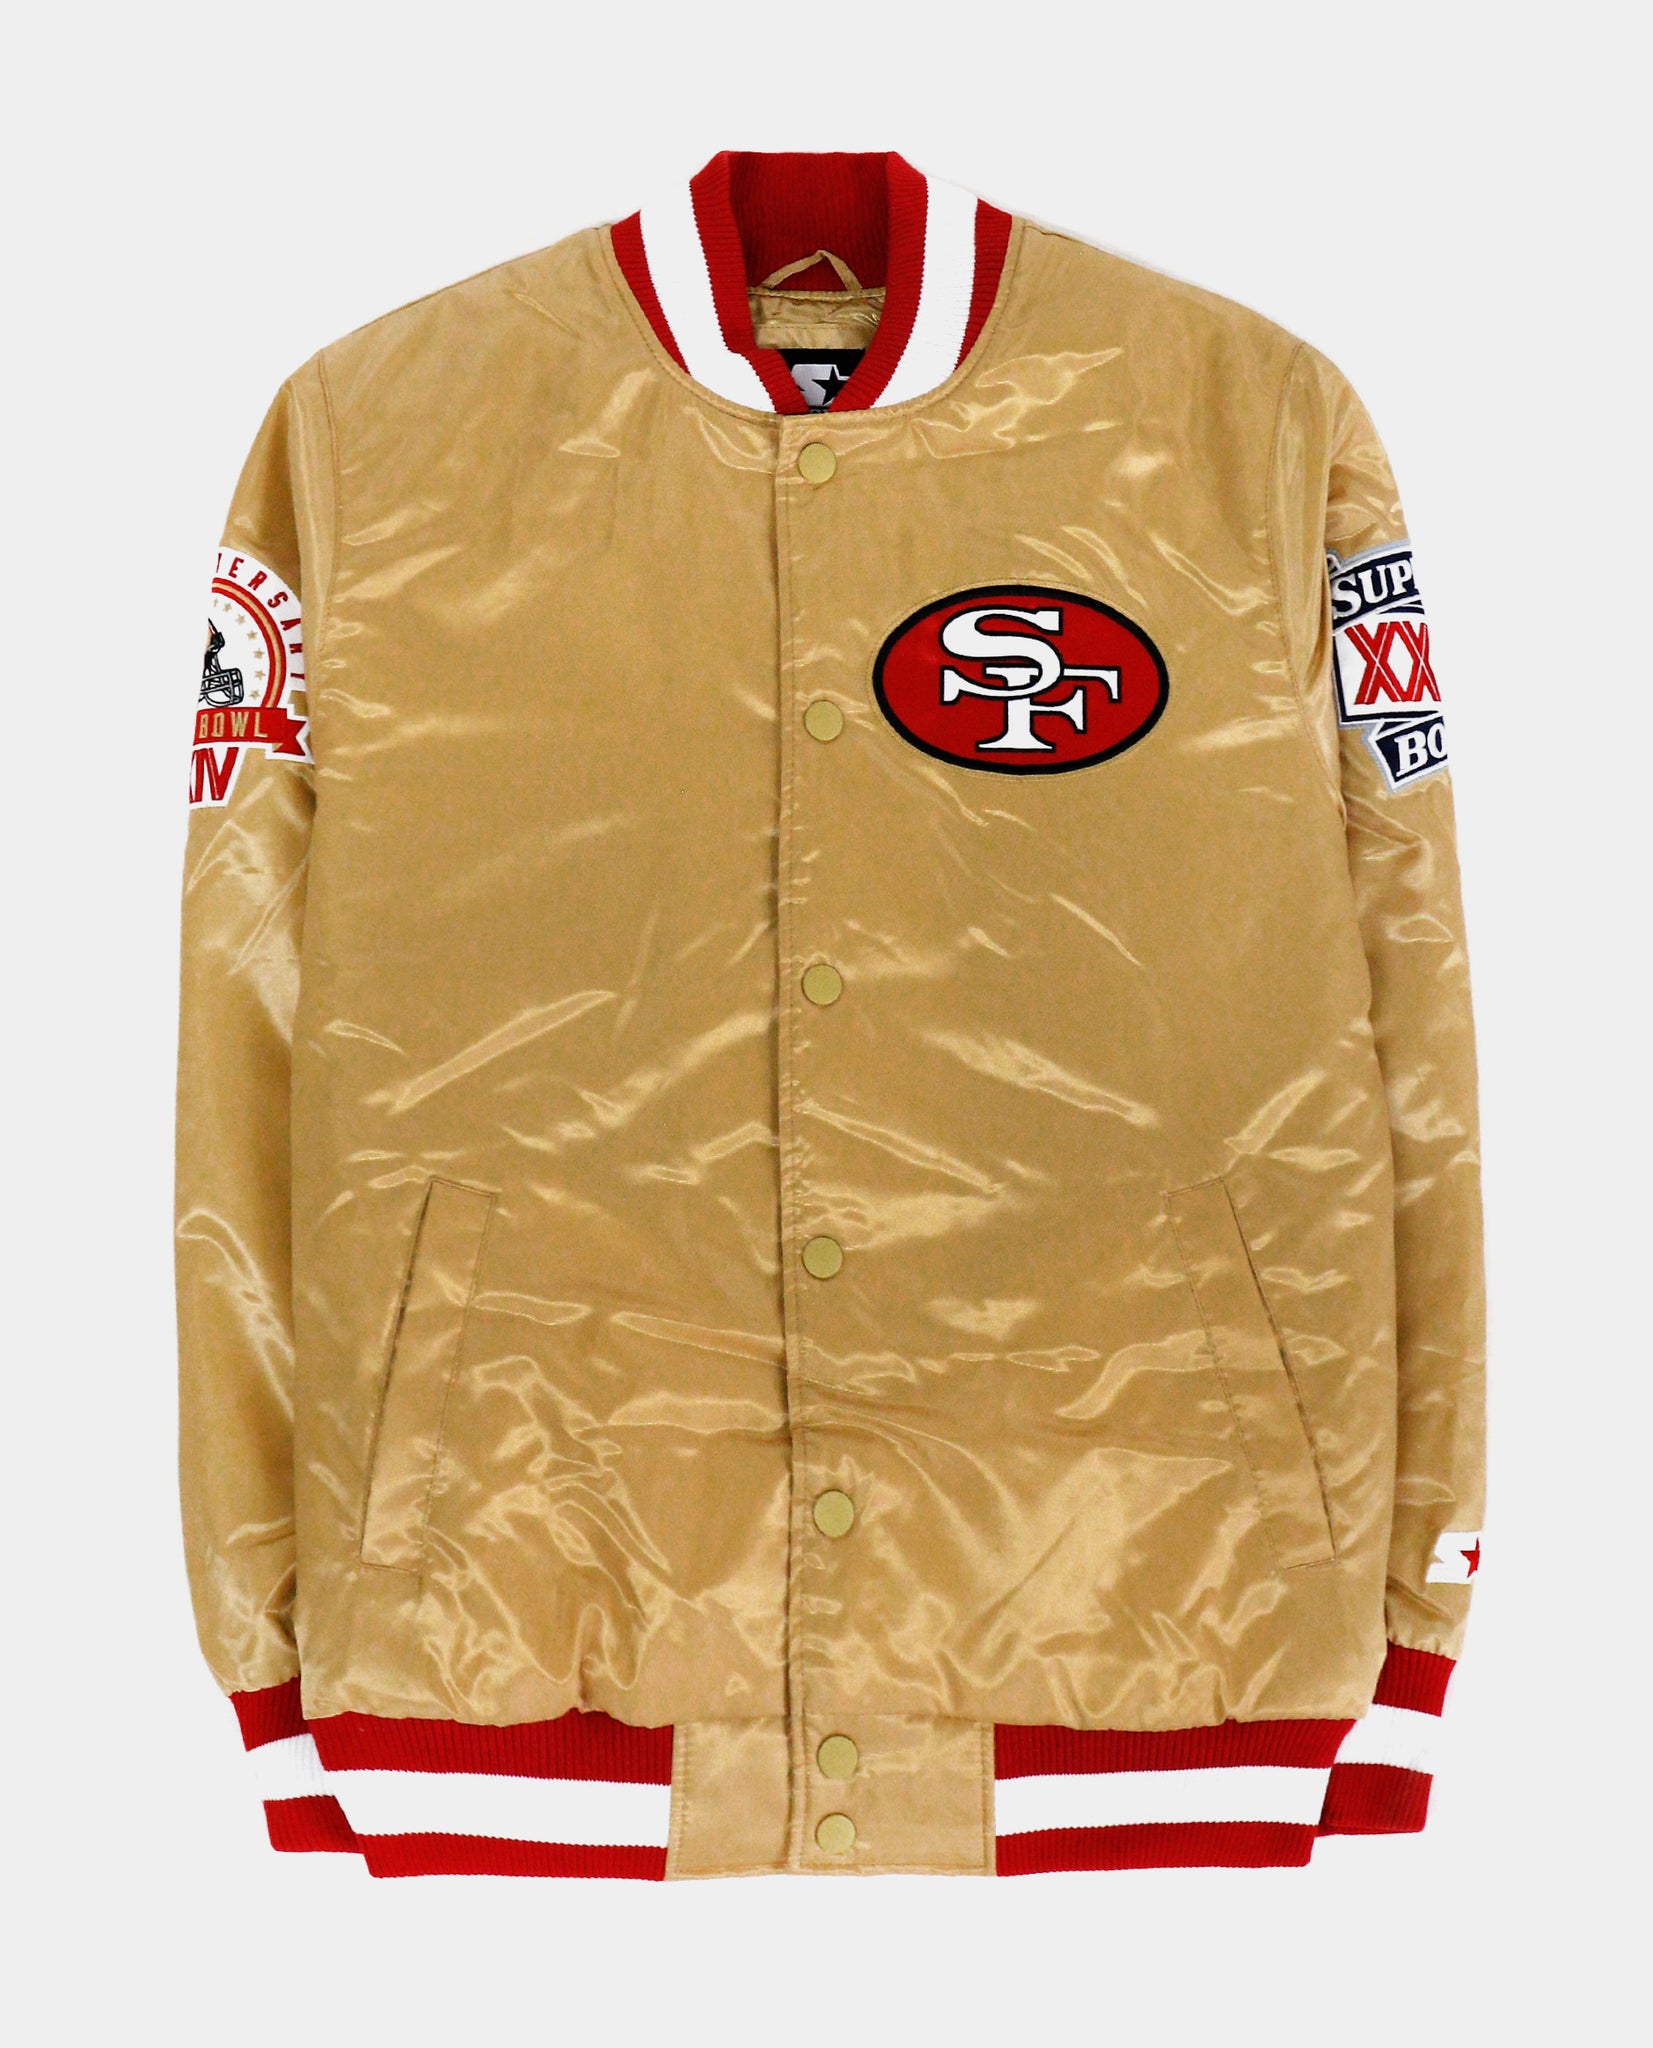 Starter San Francisco 49ers Letterman Jacket Mens Jacket Gold Red